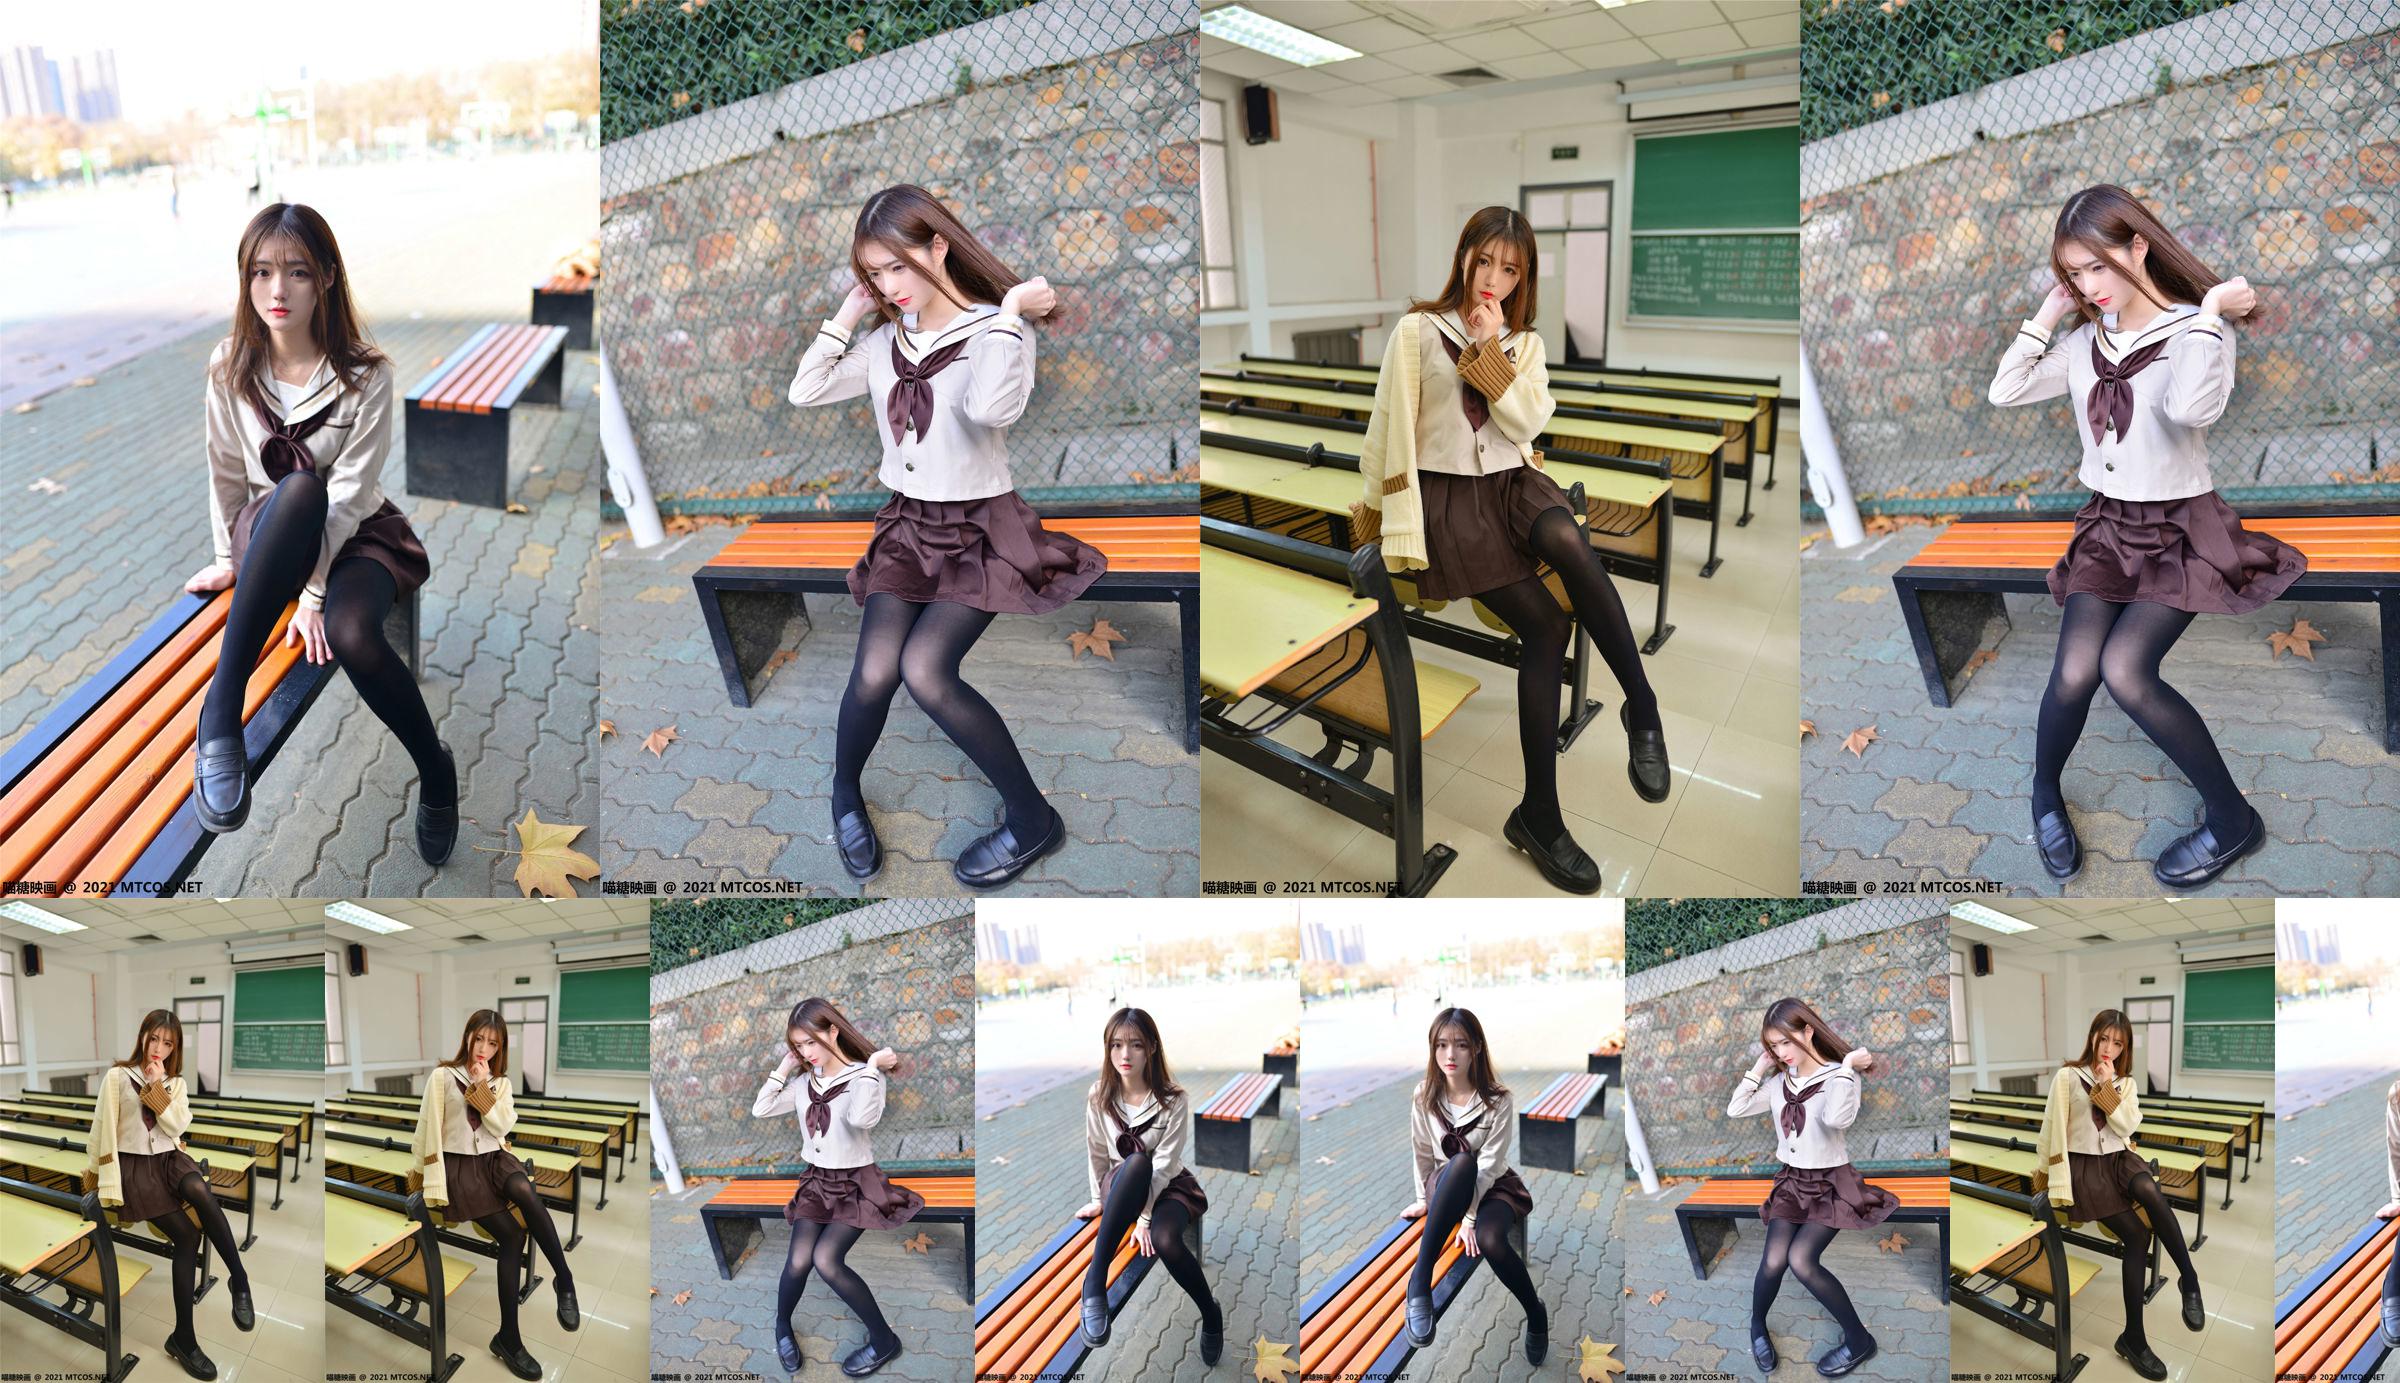 [Film Meow Candy] VOL.426 Qing Yan, studentessa di JK nel campus No.48a6a8 Pagina 2